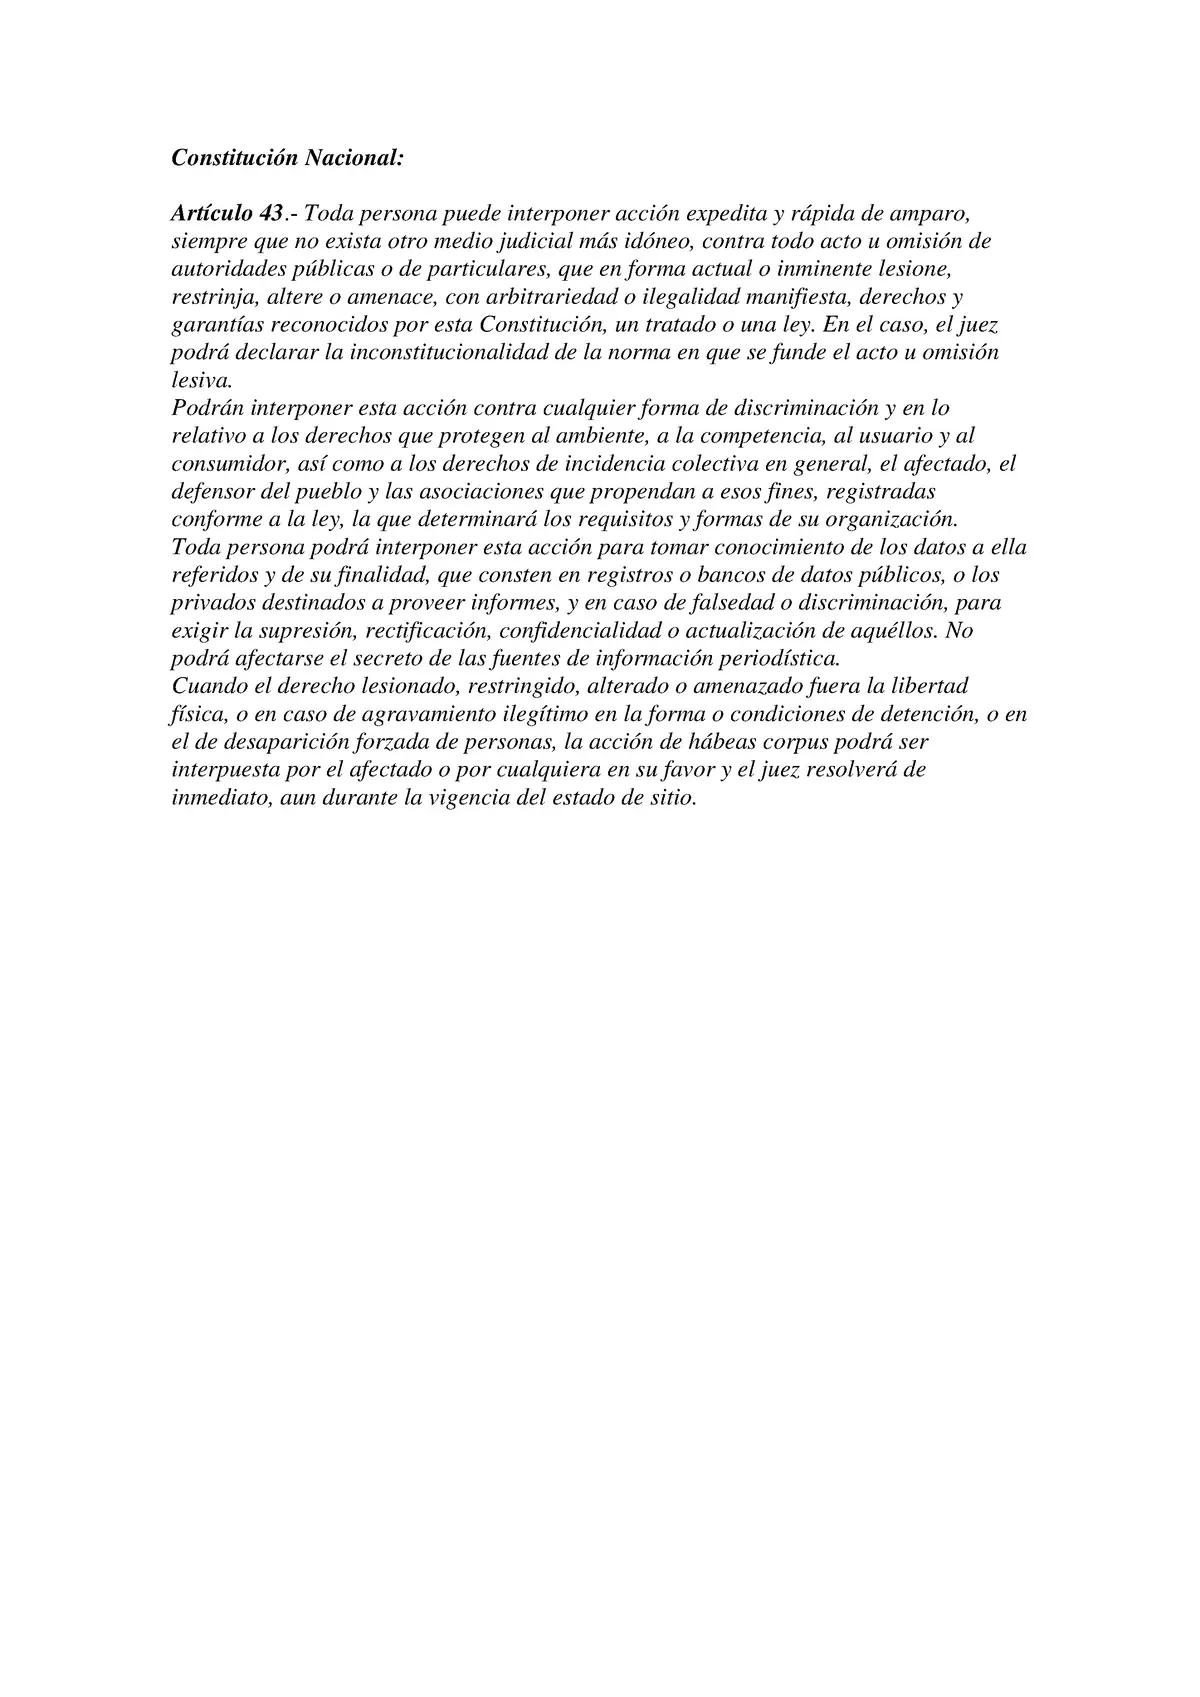 articulo 43 de la constitucion nacional resumen - Qué garantiza la ley de Amparo